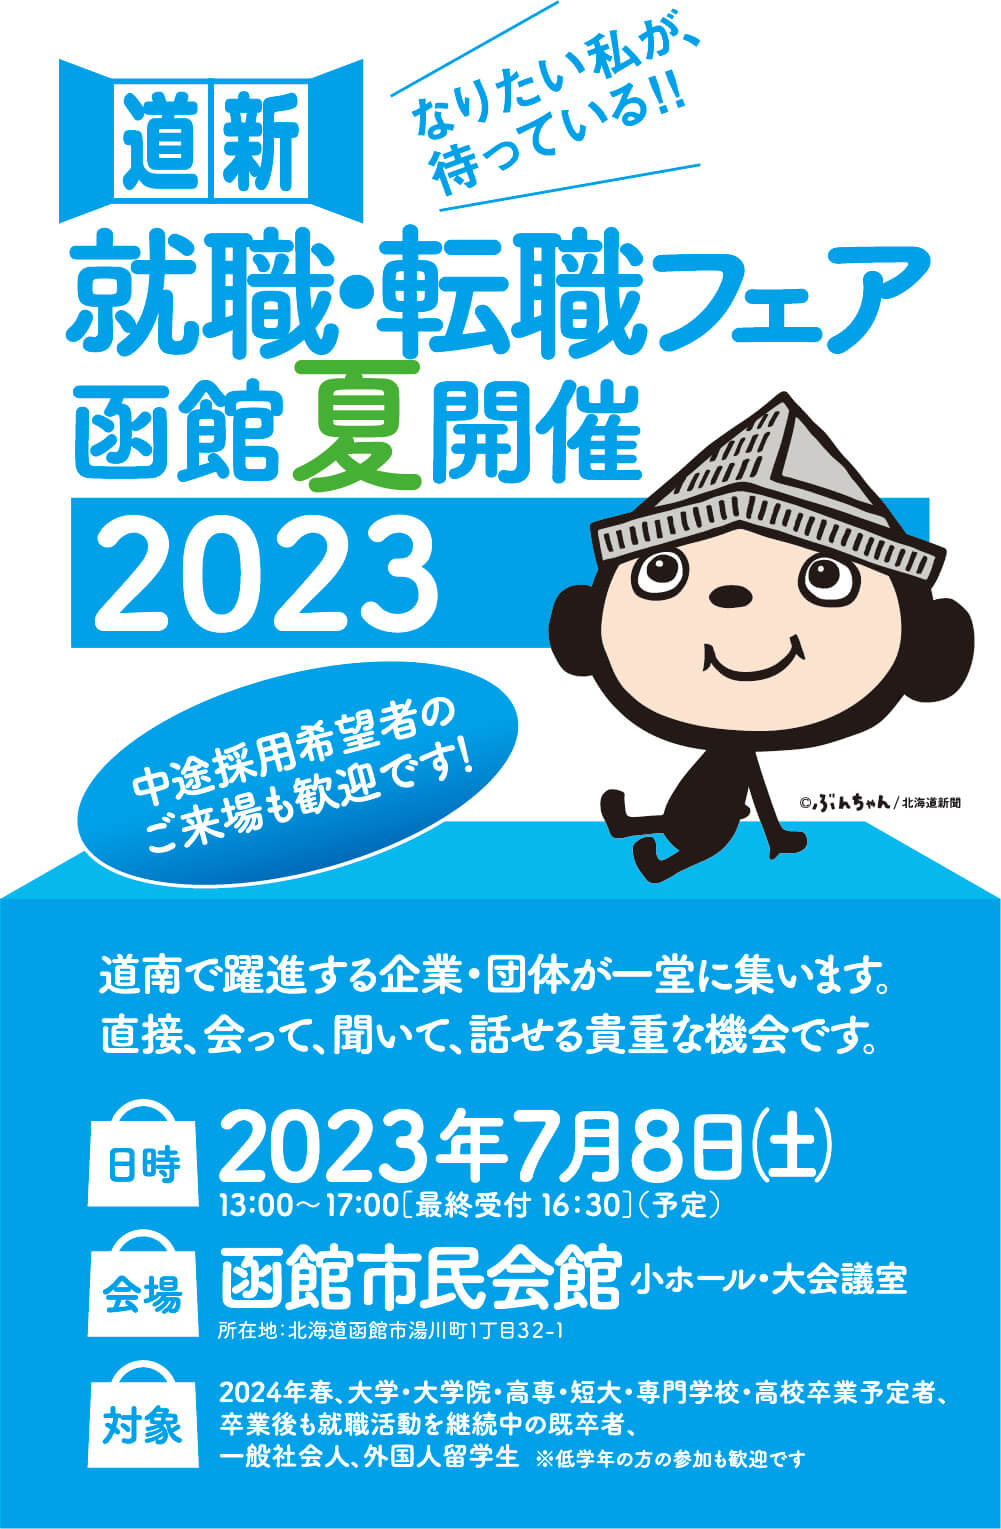 就活・転職フェア-函館春開催2023-合同企業説明会